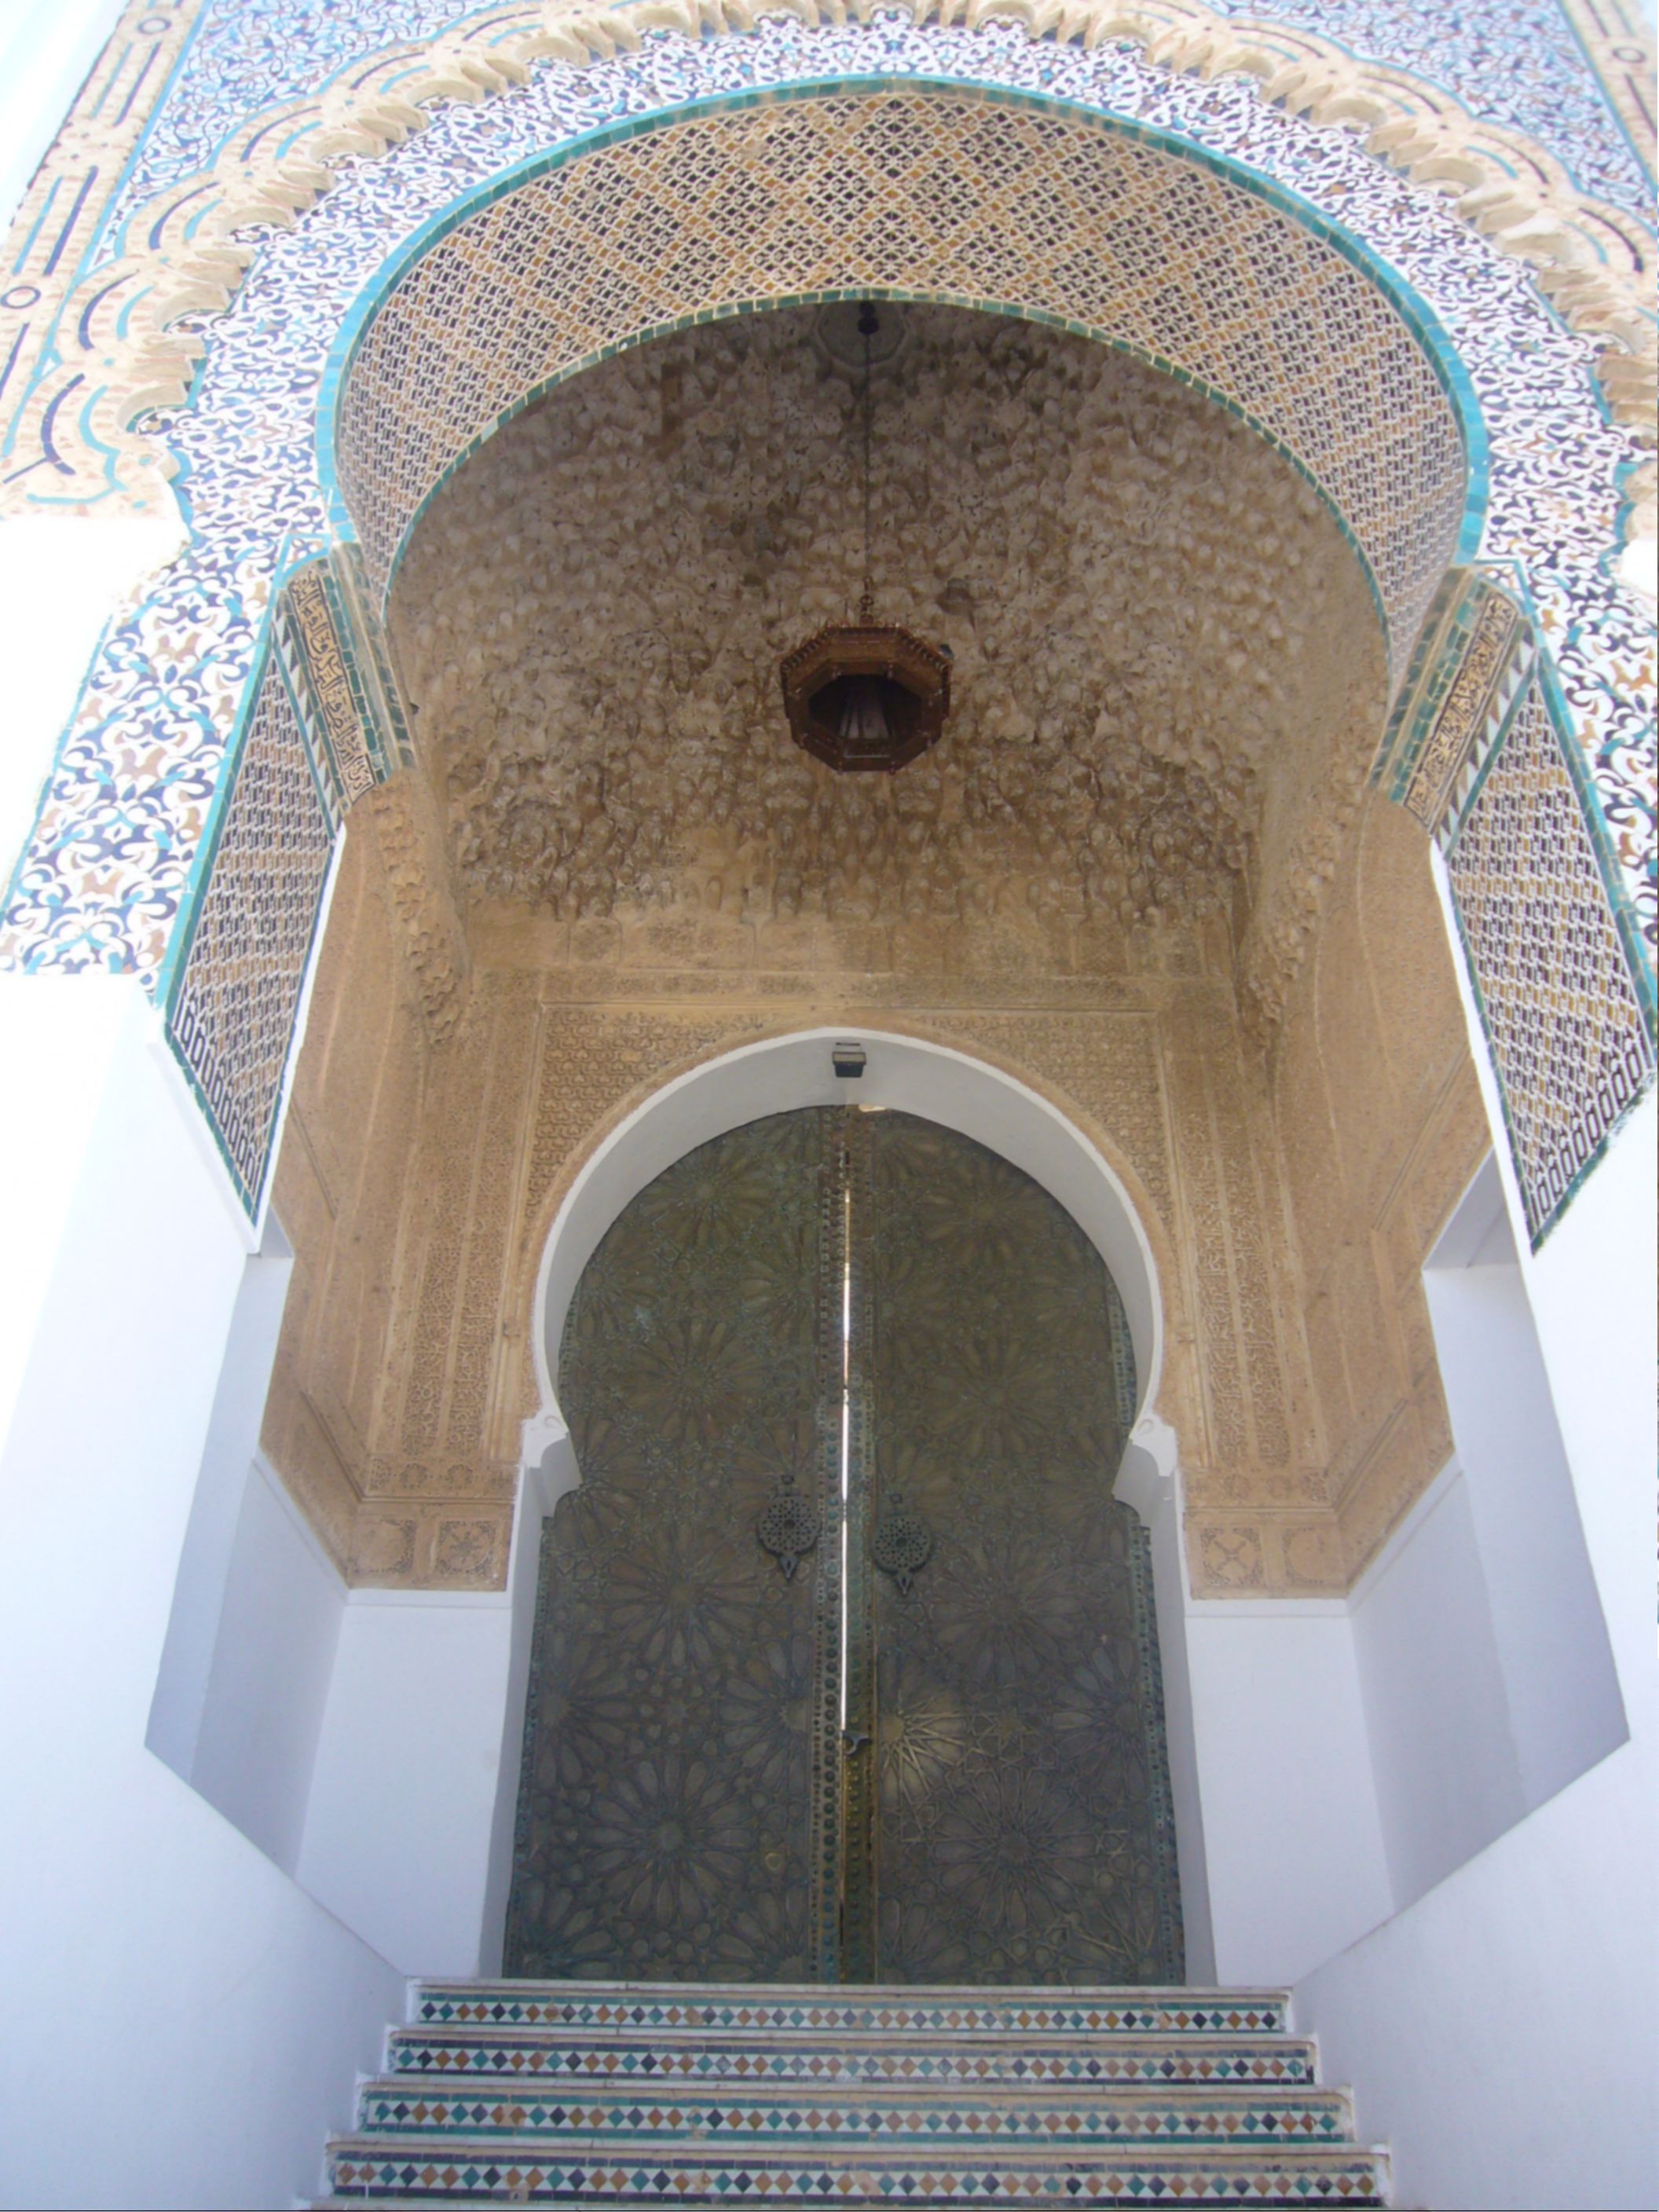 Porte_mosquee_Sidi_Boumediene_Tlemcen.jpg